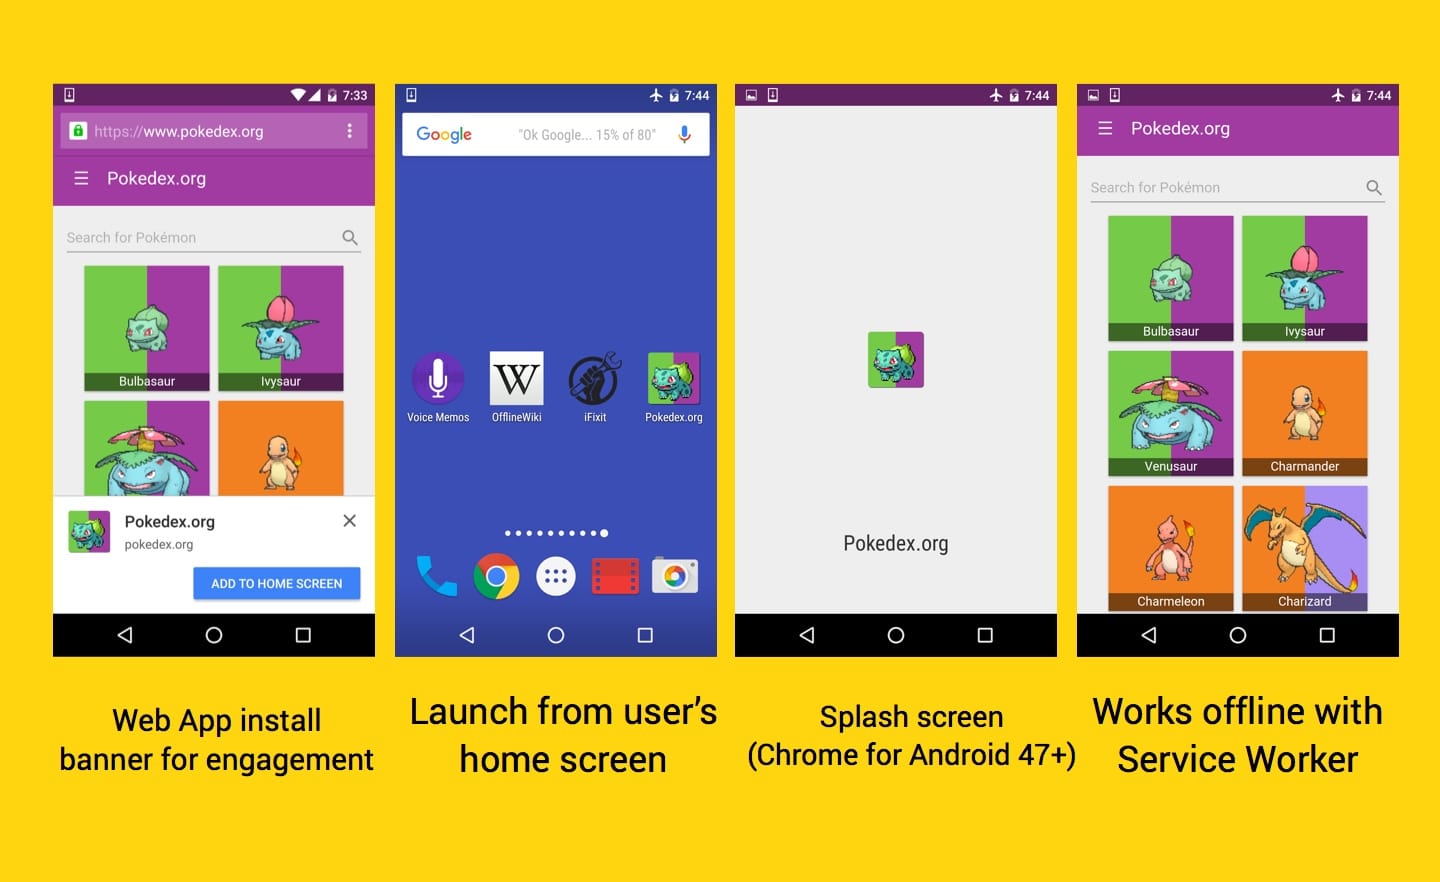 참여를 위한 웹 앱 설치 배너, 사용자 홈 화면에서 실행, Android용 Chrome의 스플래시 화면, 서비스 워커를 통해 오프라인으로 작동